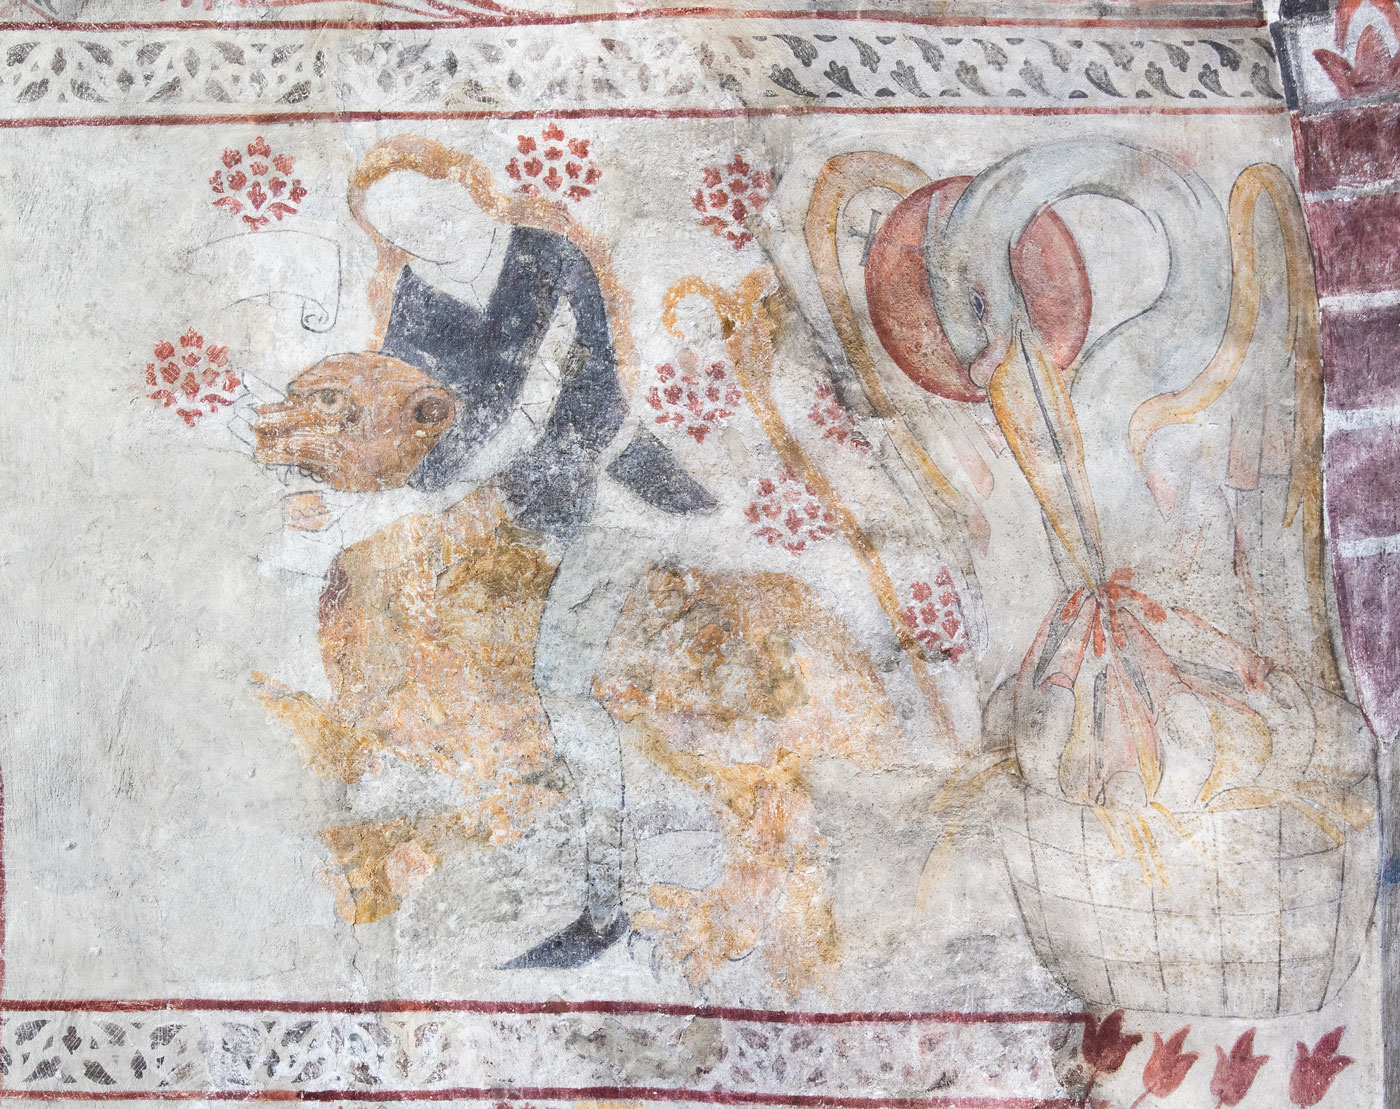 Simson bänder isär lejonets käftar (Albertus Pictor); Pelikanen matar sina ungar med sitt blod (Olle Hjortzberg) - Eds kyrka